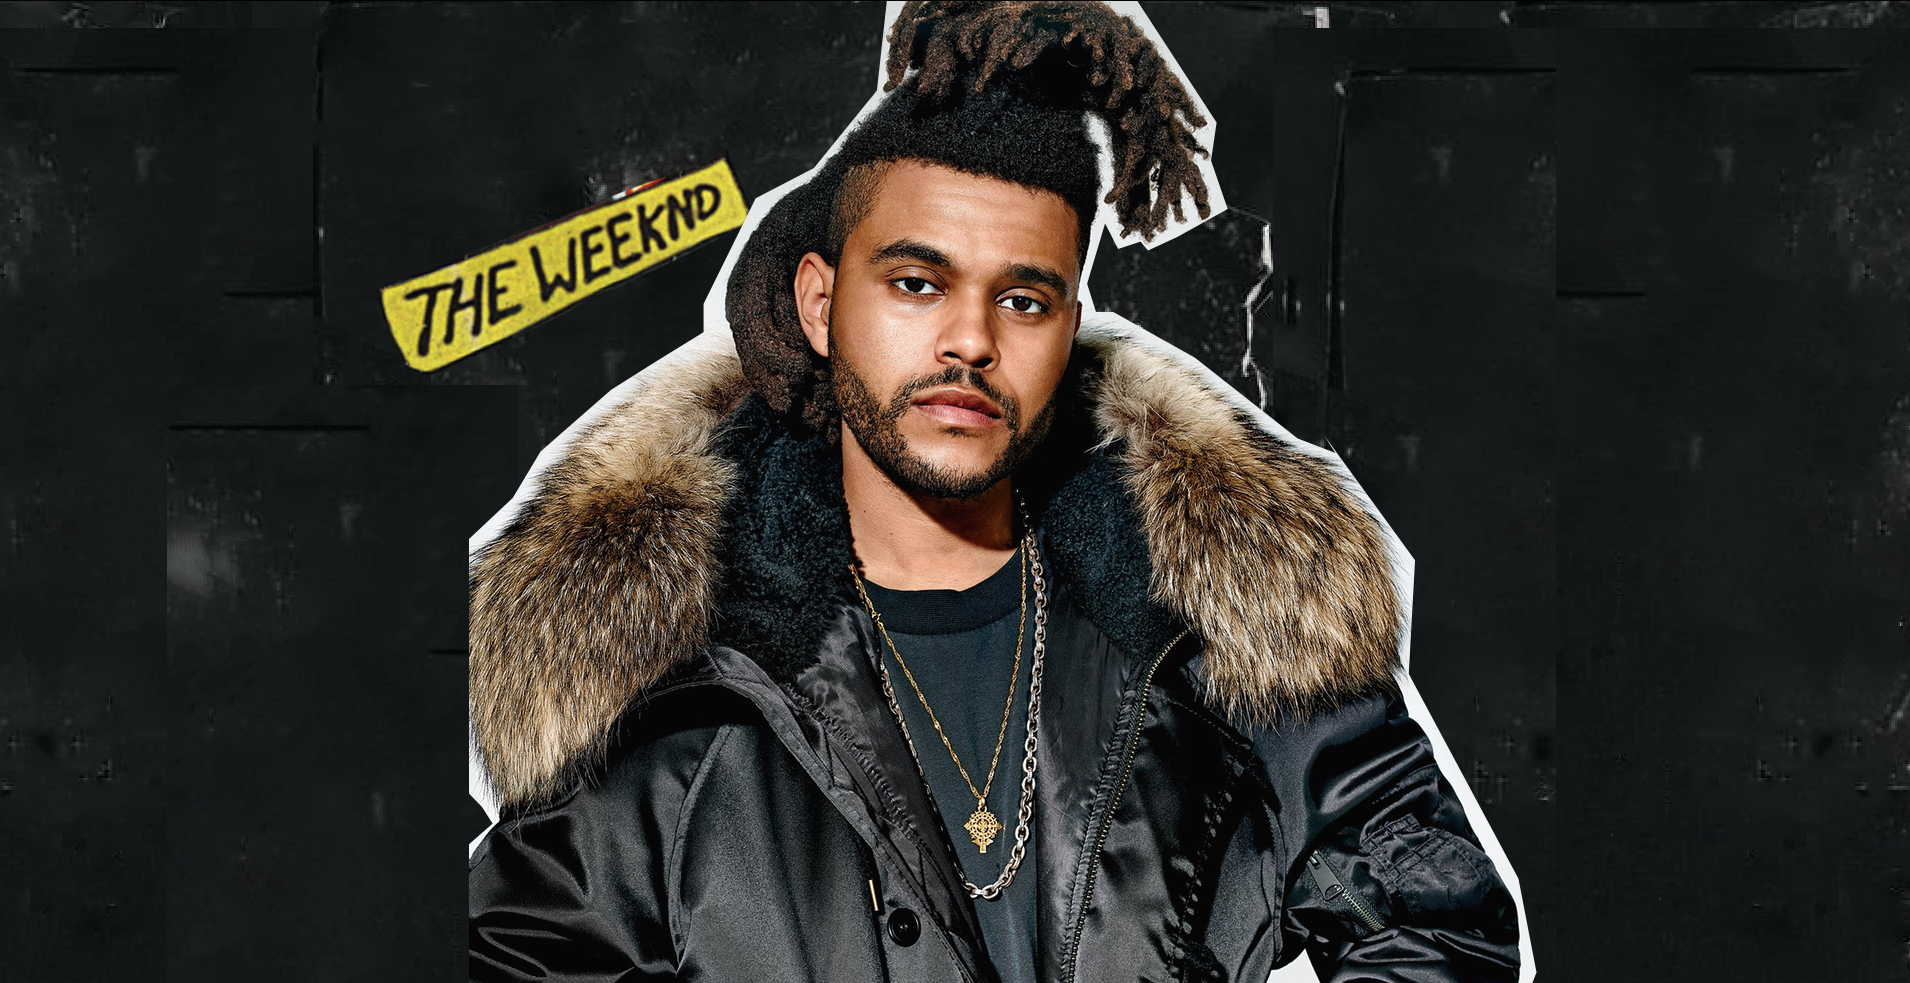 Megszabadult a védjegyévé vált frizurájától The Weeknd